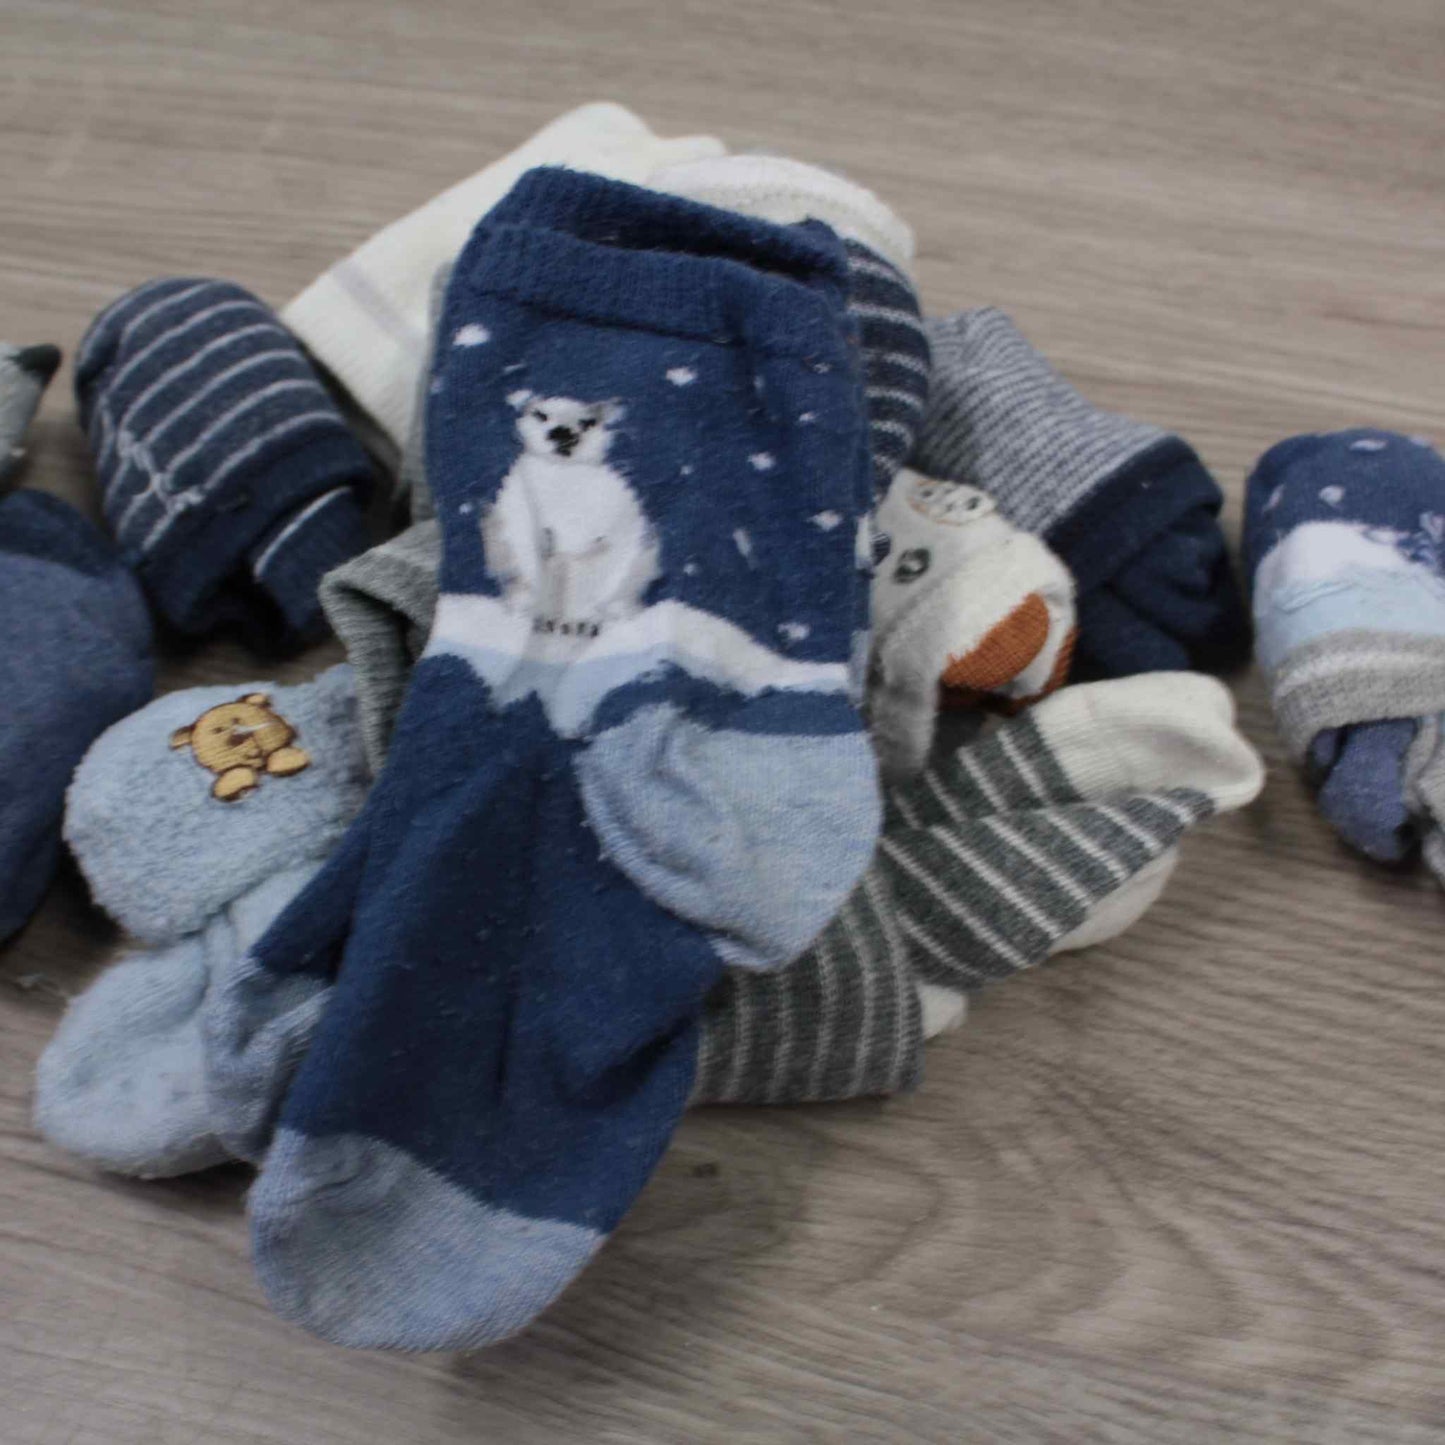 Vauvan sukat setti, koko EU 18